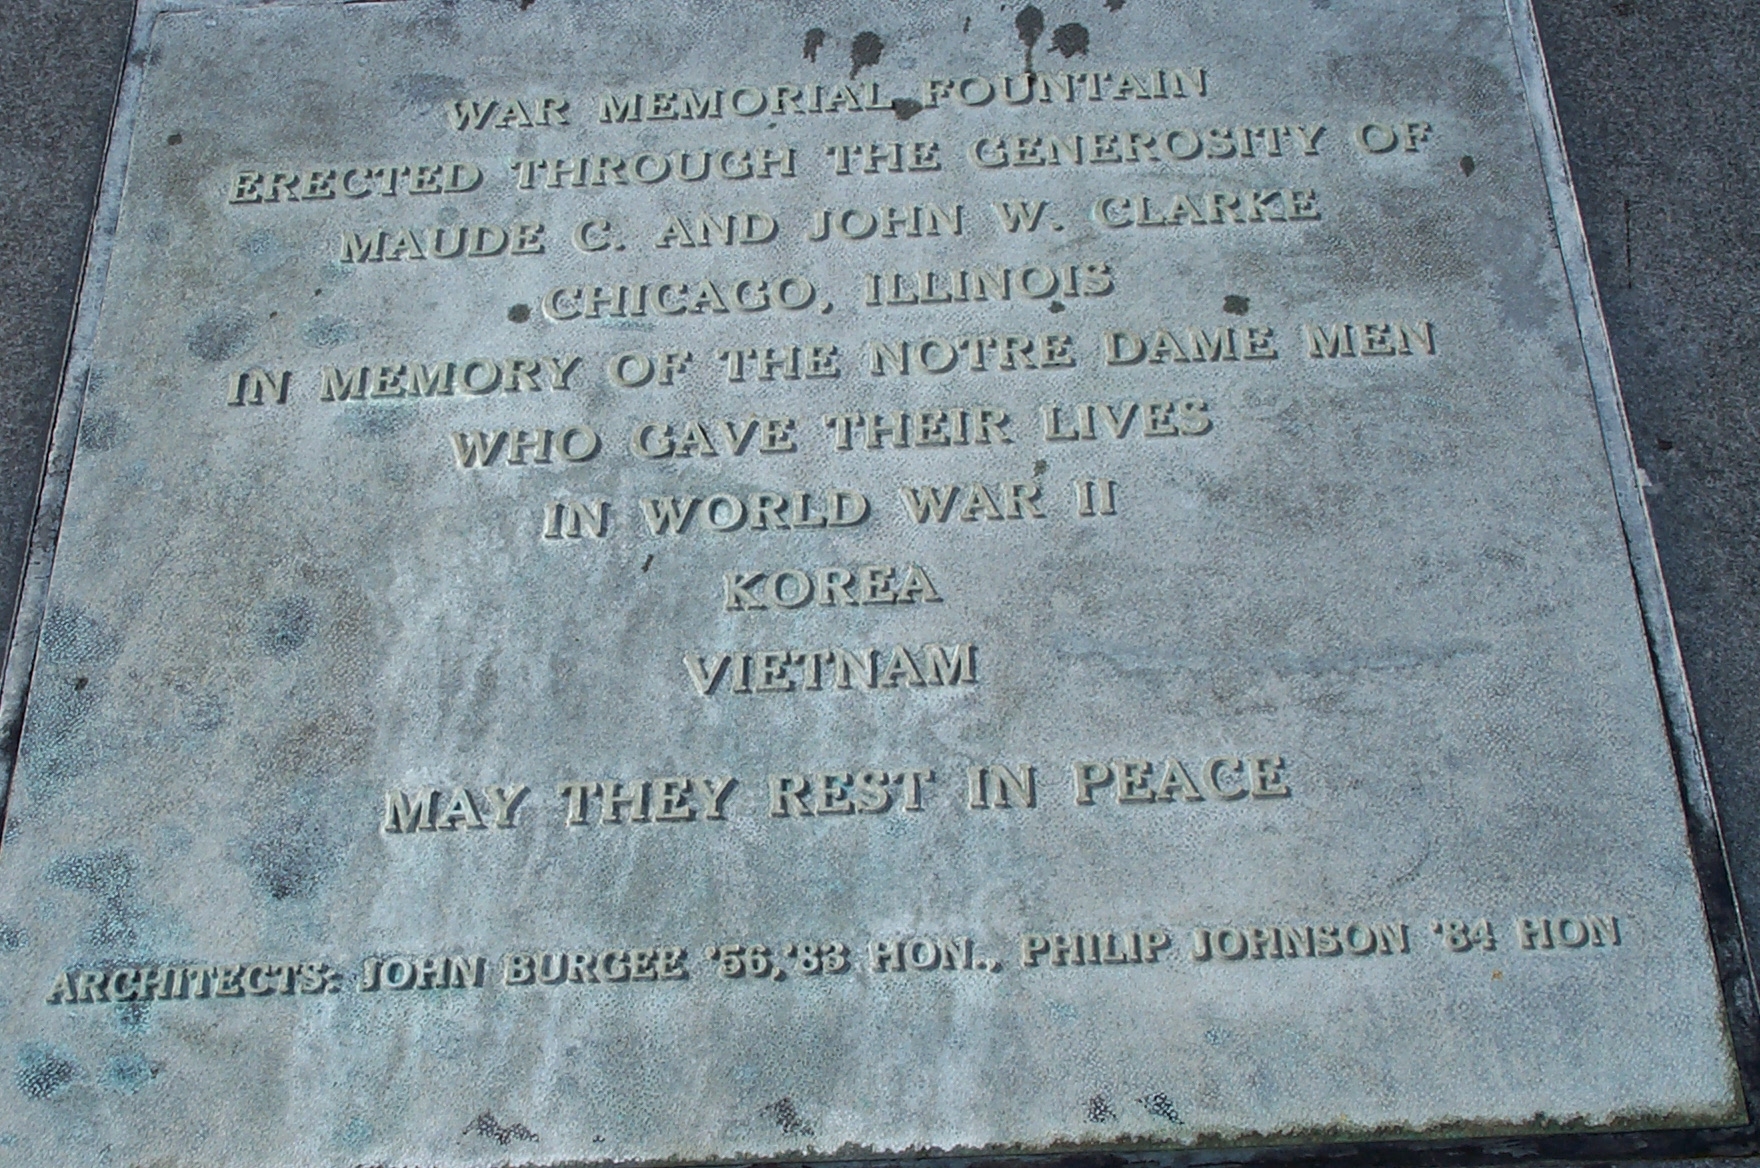 Clarke Peace Memorial Marker east side of Fountain